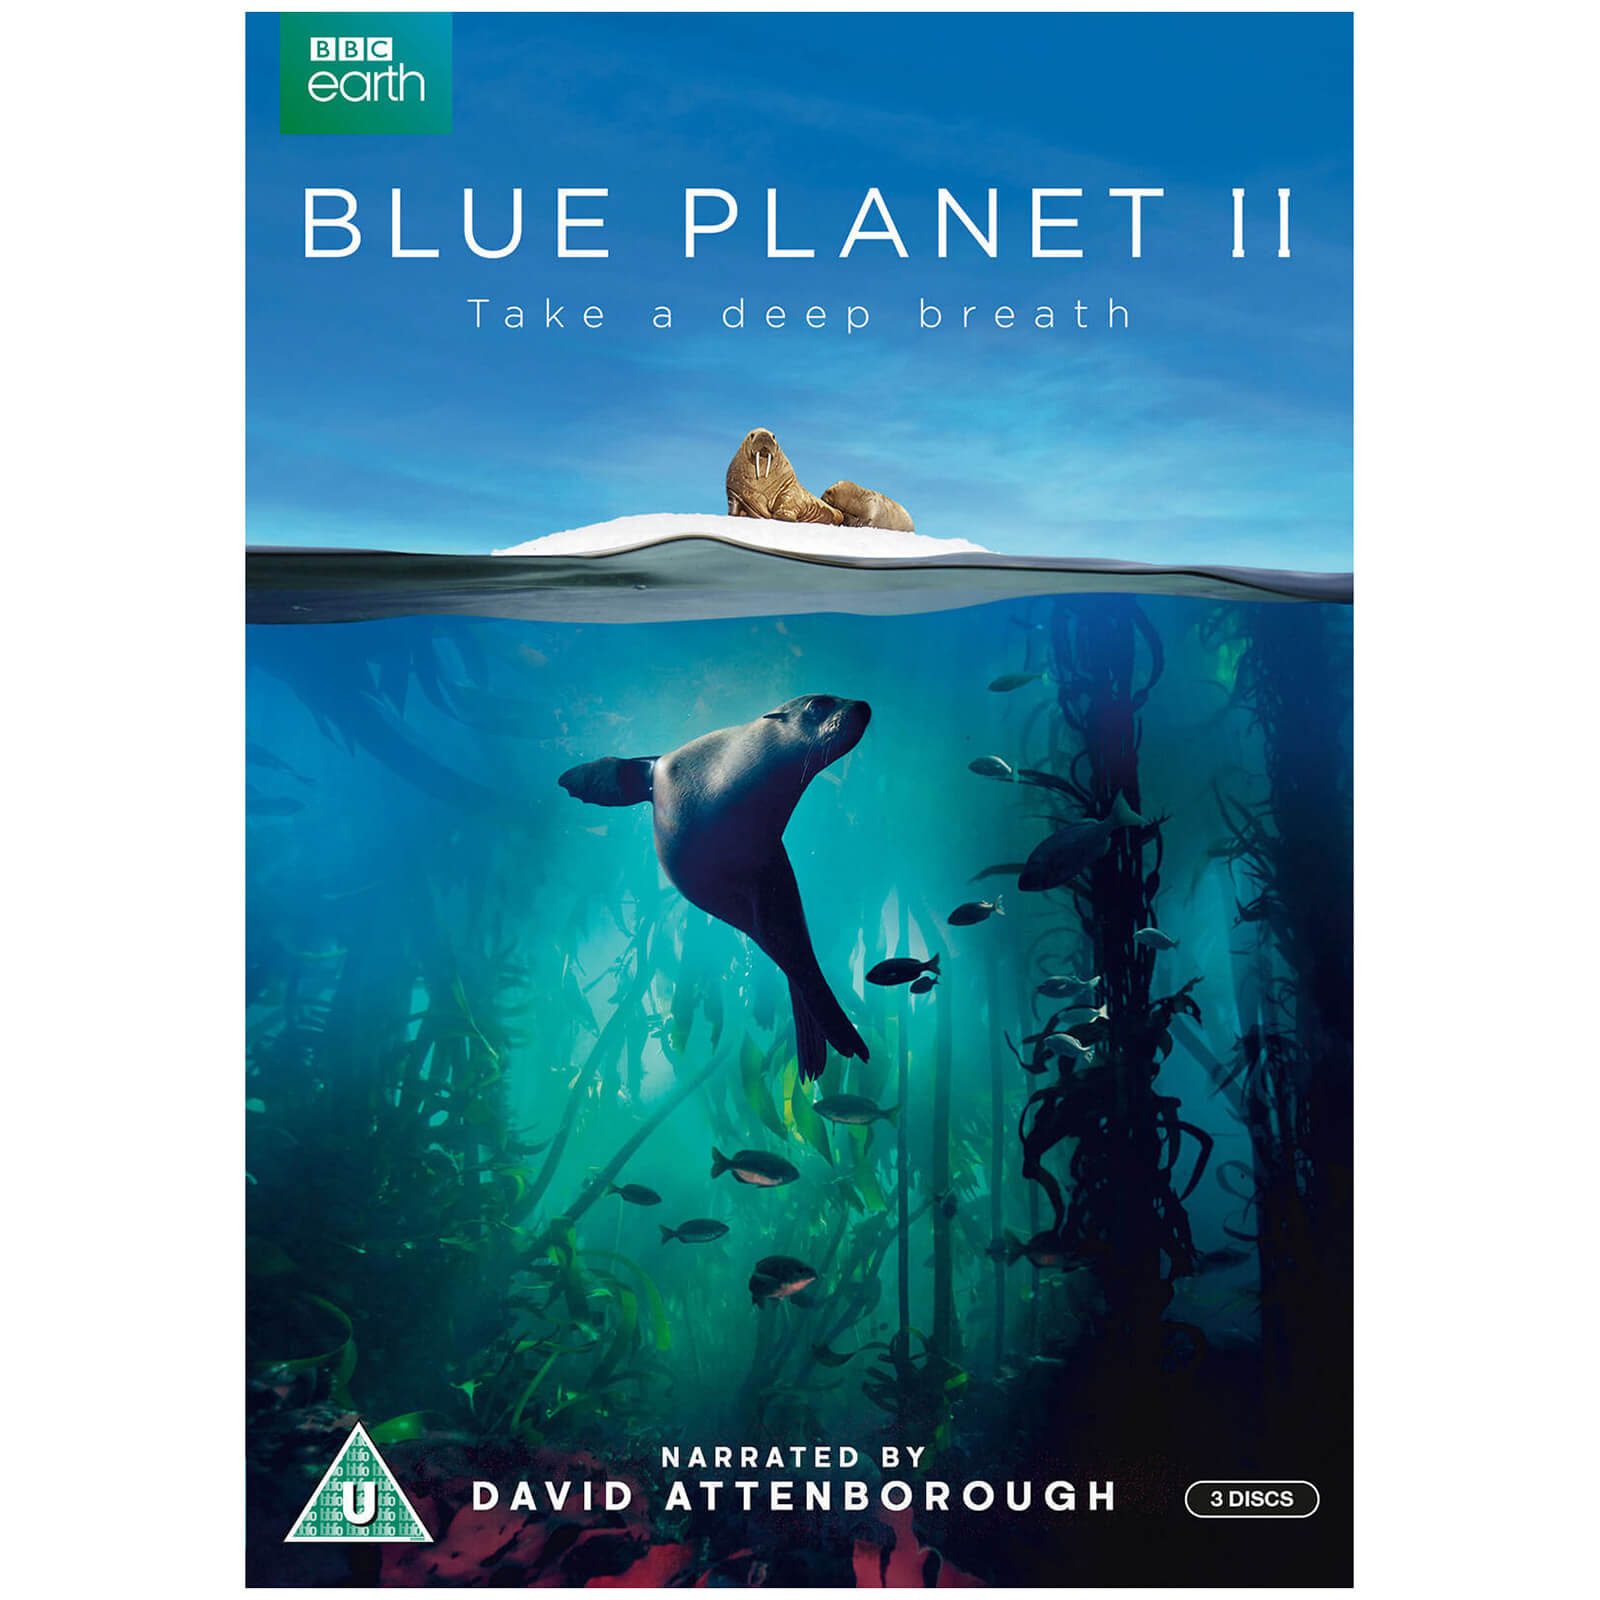 Blauer Planet II von BBC